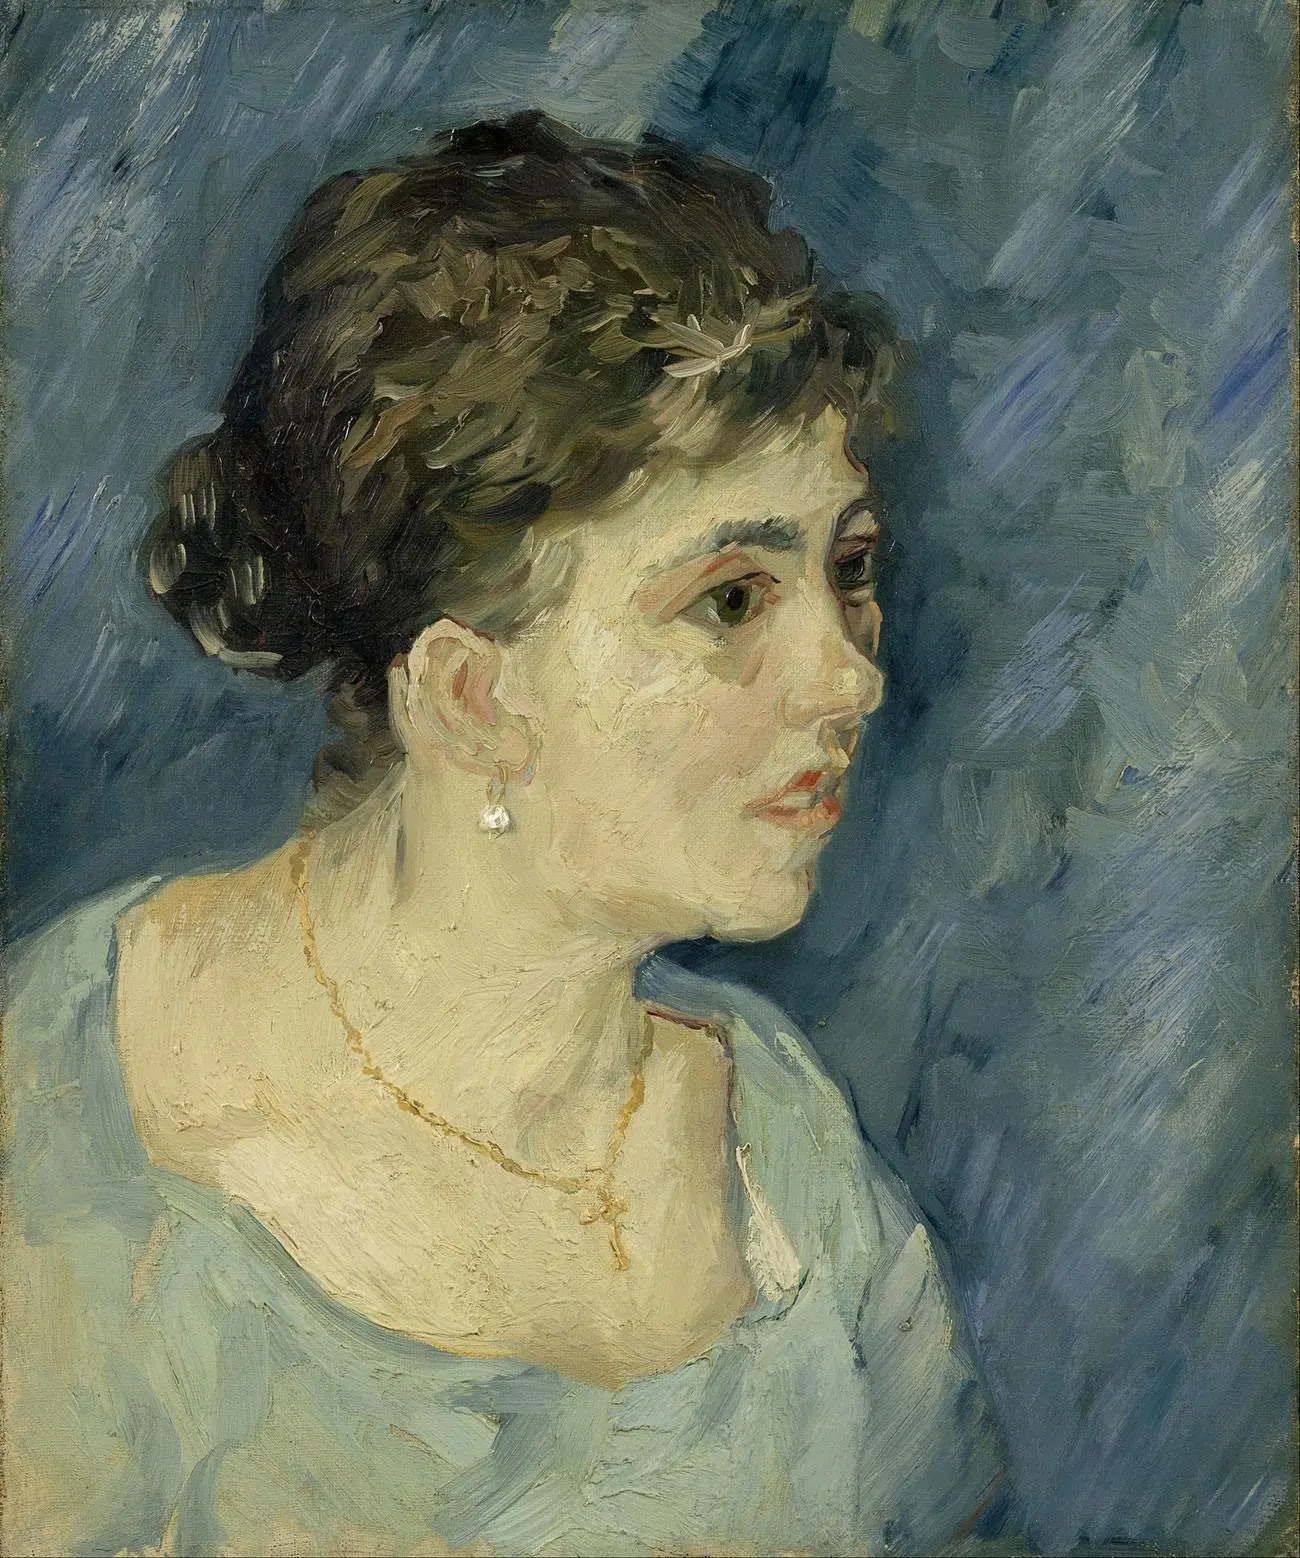 梵高油画肖像作品 穿蓝色衣服的女人肖像画